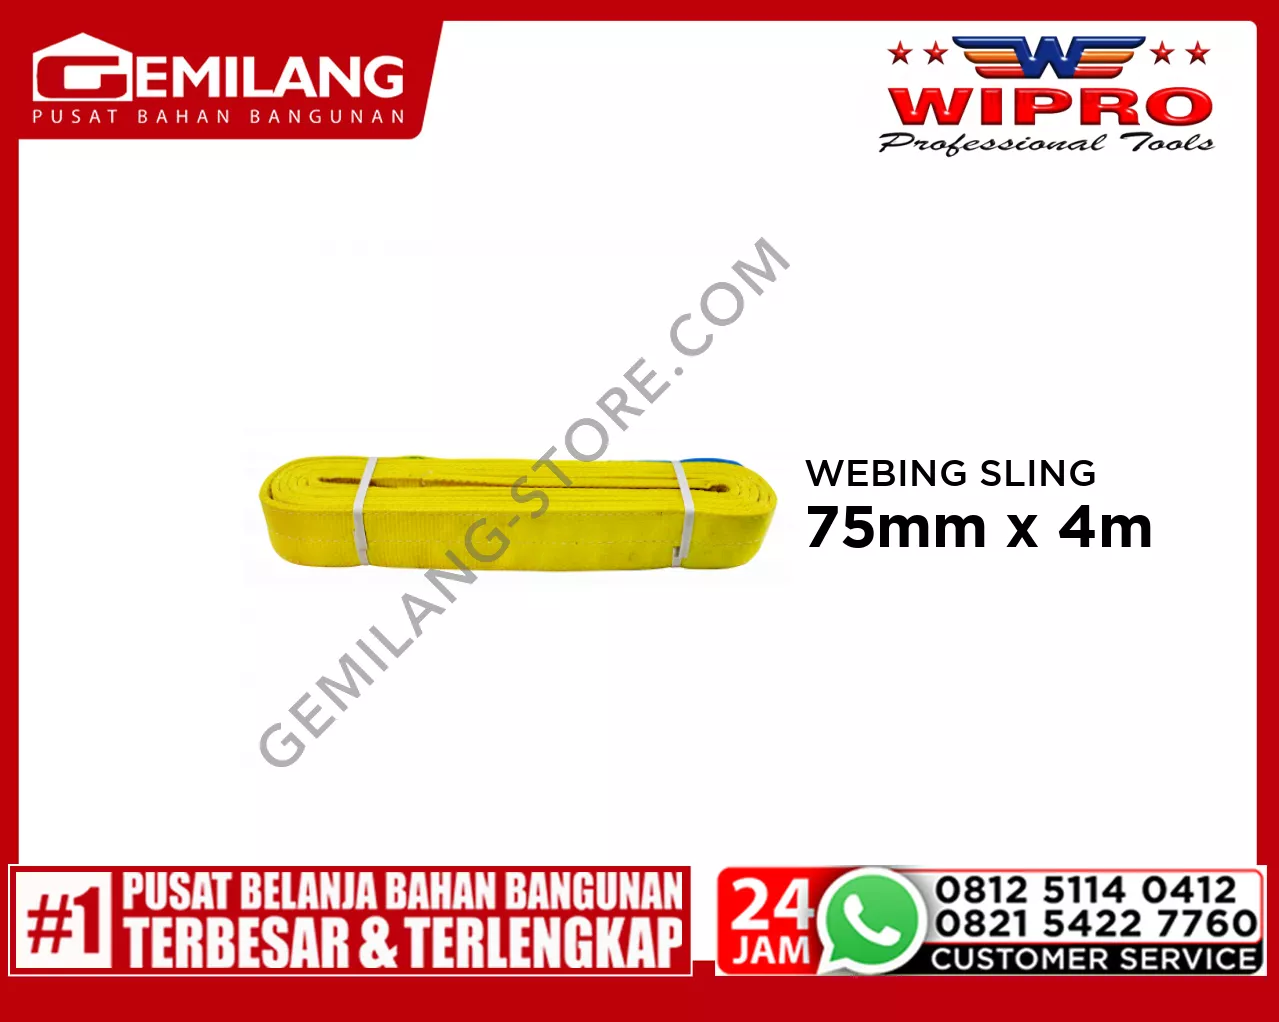 WIPRO WEBING SLING WLL3T4 (KUNING) 75mm x 4m